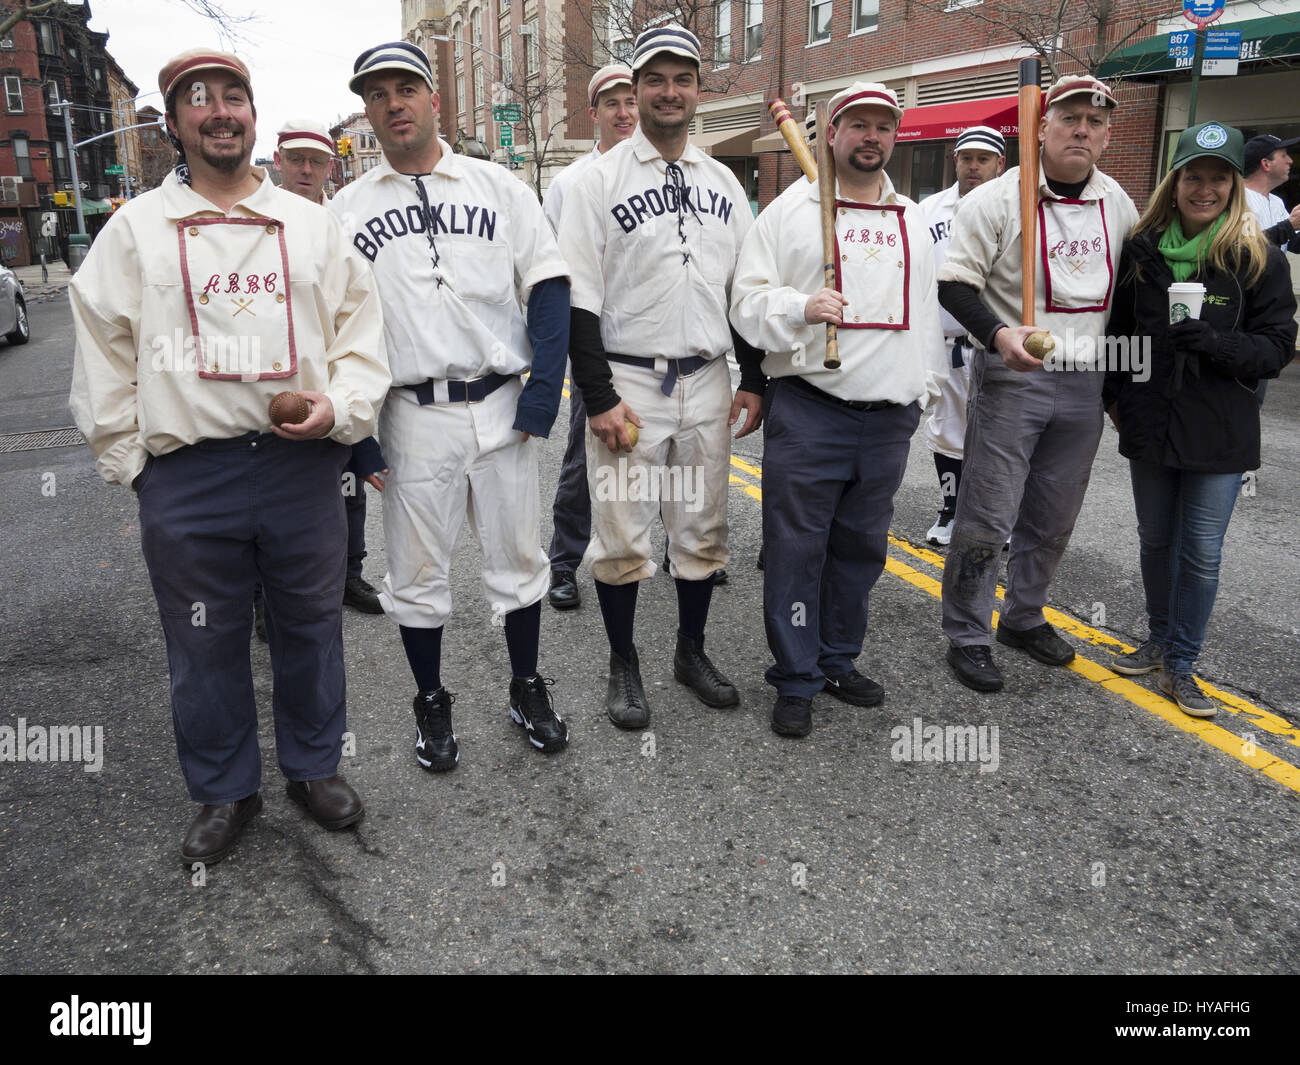 L'équipe de baseball historique, le Brooklyn Atlantics, défilé dans le parc Prospect samedi pour célébrer le début de la saison de baseball et le parc du 150 e anni Banque D'Images